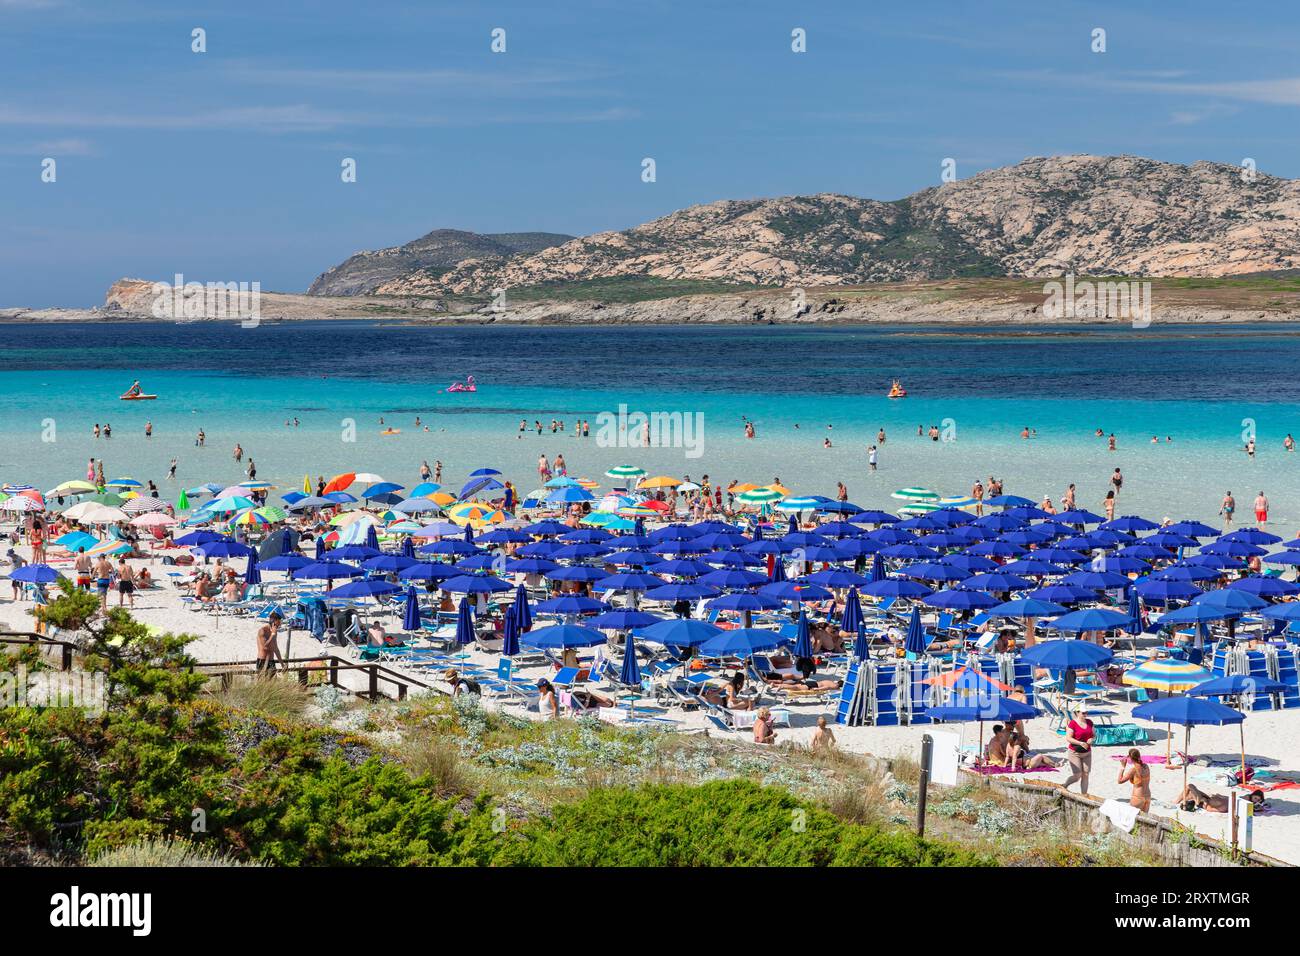 Spiaggia della Pelosa, Golfo dell'Asinara, Stintino, provincia di Sassari, Sardegna, Italia, Mediterraneo, Europa Foto Stock